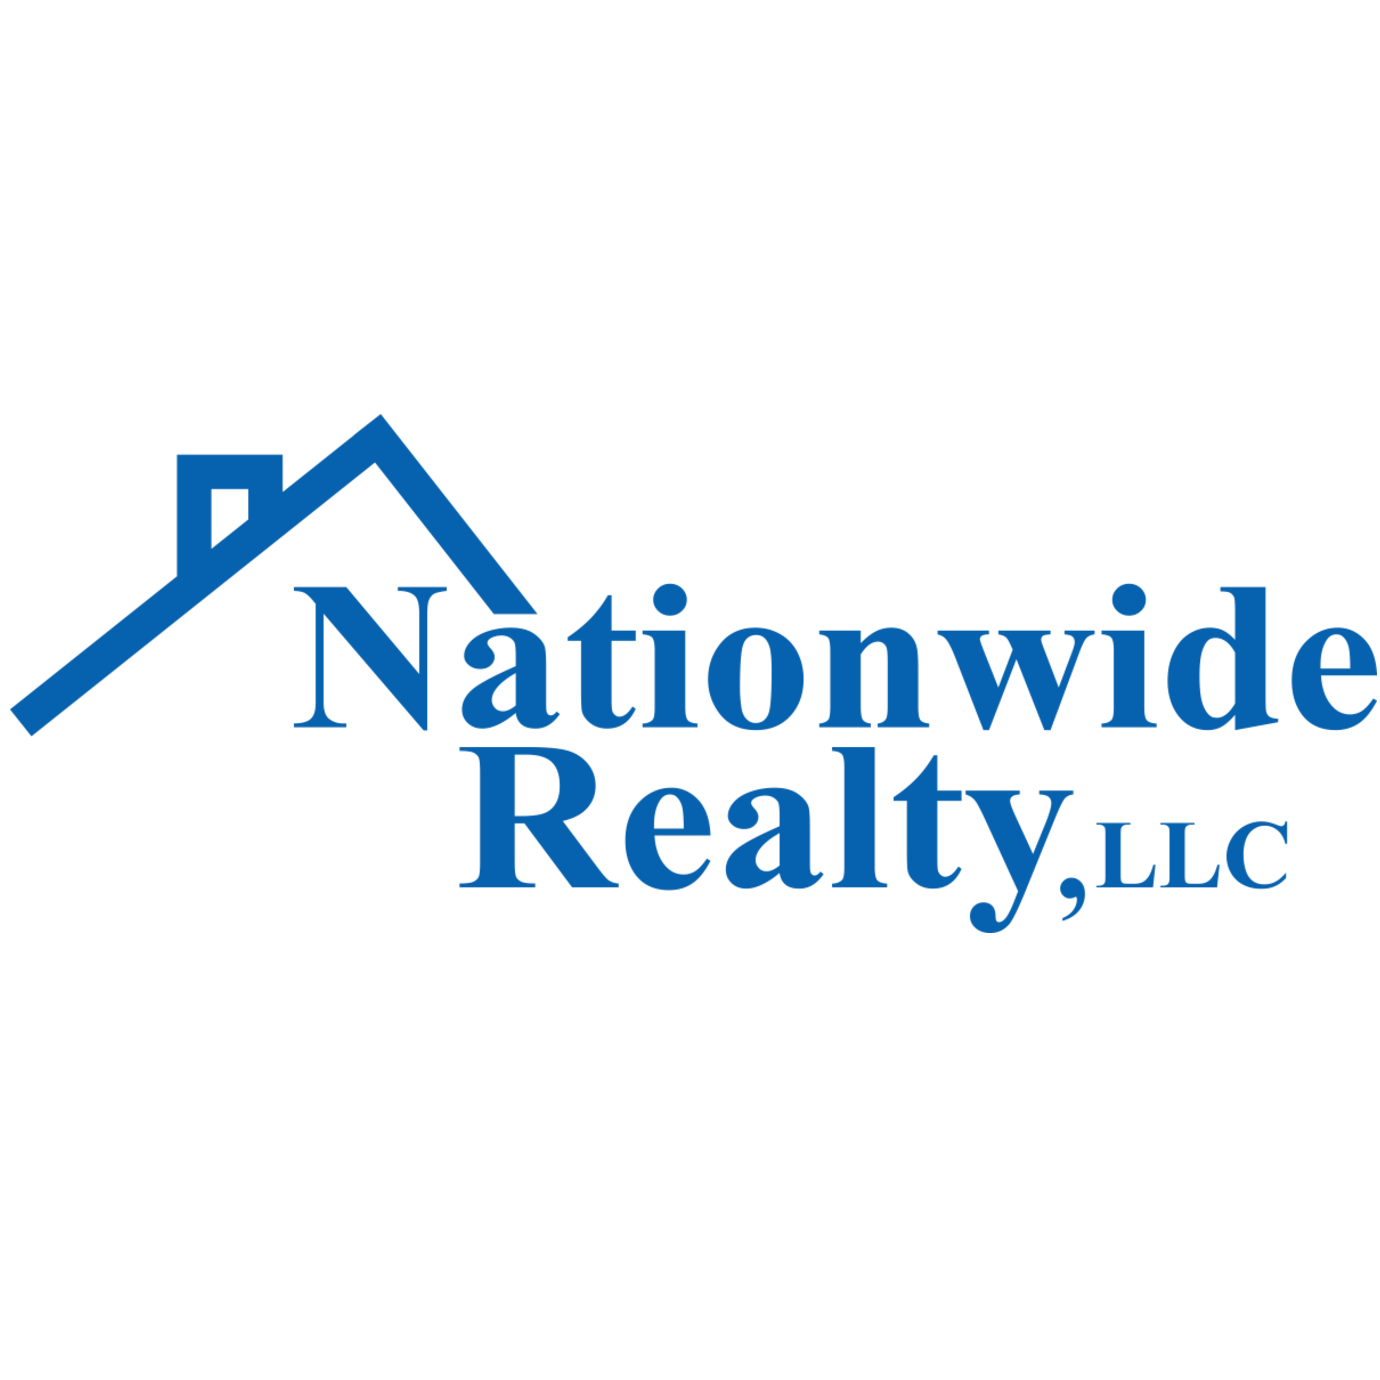 Cole Nye | Nationwide Realty, LLC